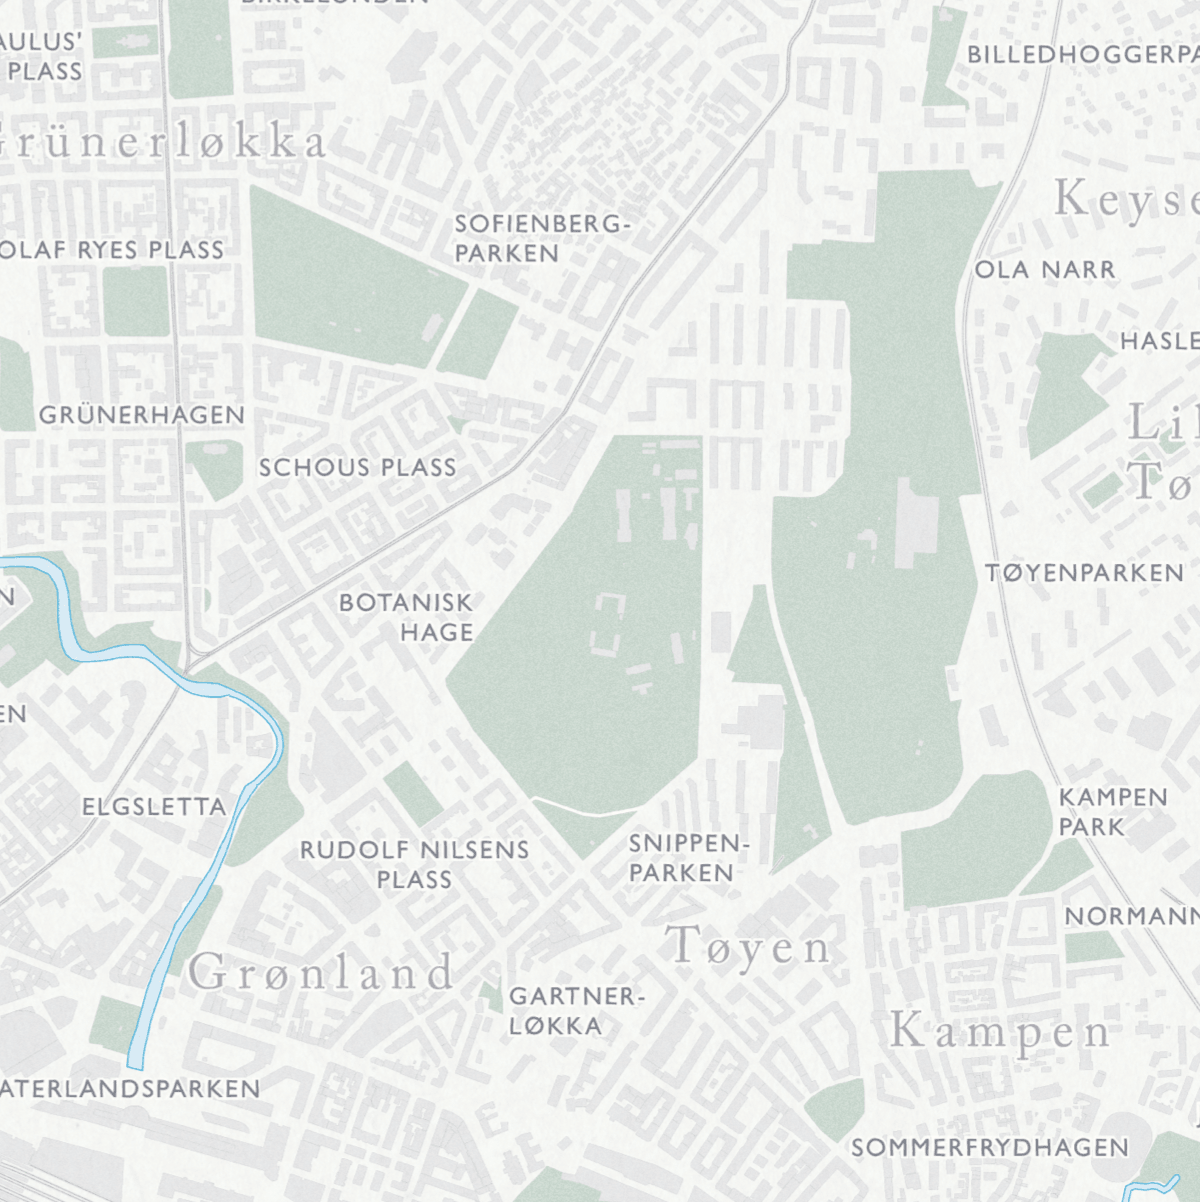 Retro kart over Oslo som viser Botanisk hage, Schous Plass, Tøyen, Kampen og Grønland.